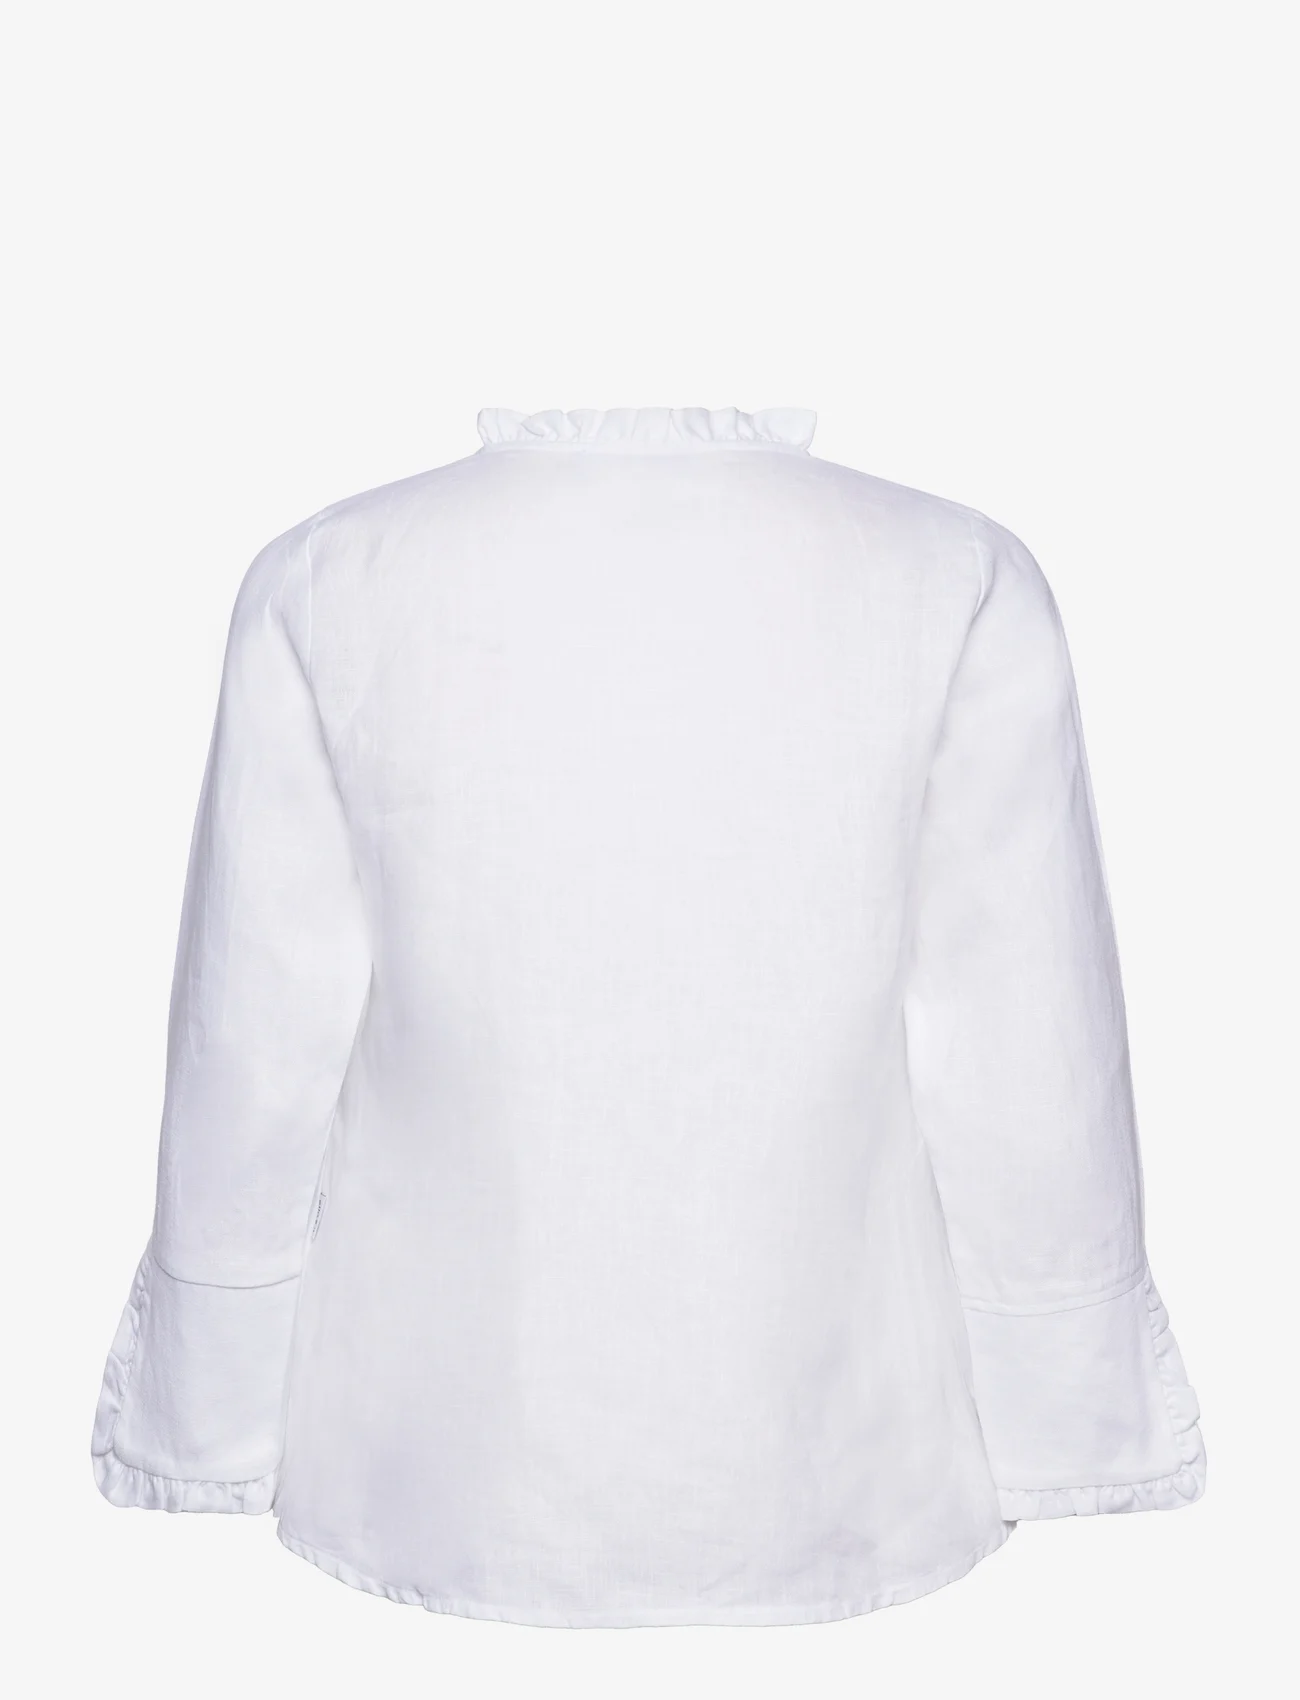 ella&il - Clarion linen shirt - linskjorter - white - 1